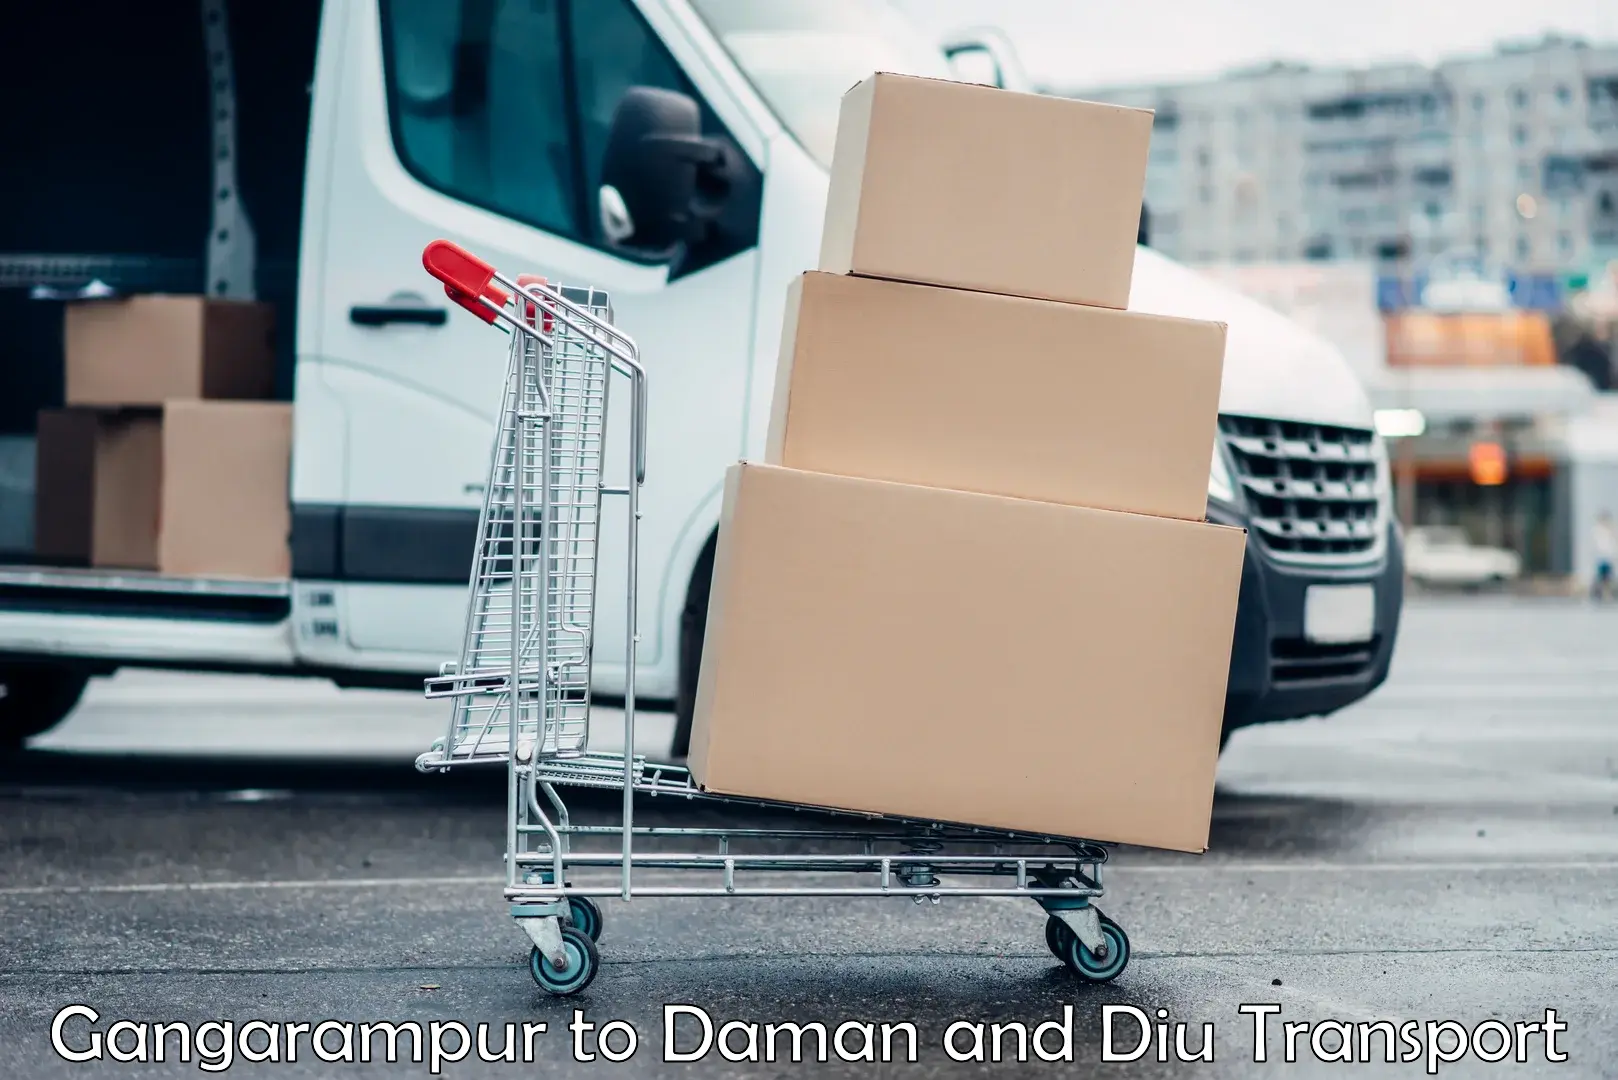 Logistics transportation services Gangarampur to Daman and Diu